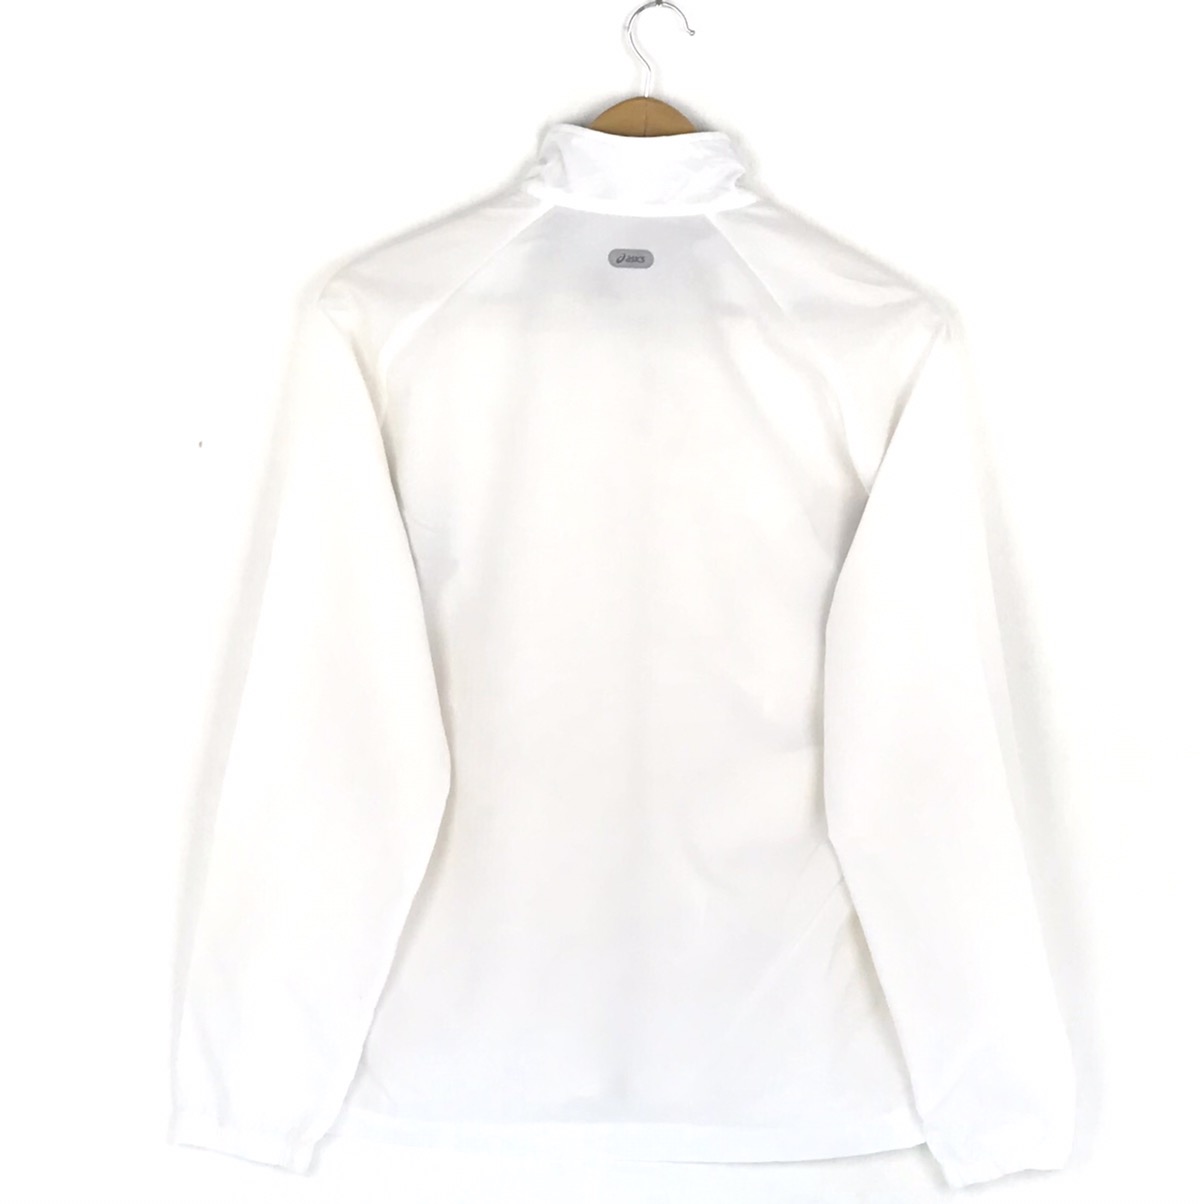 Asics windbreaker Jacket/ Full Zipper Sportwear Sweater - 3